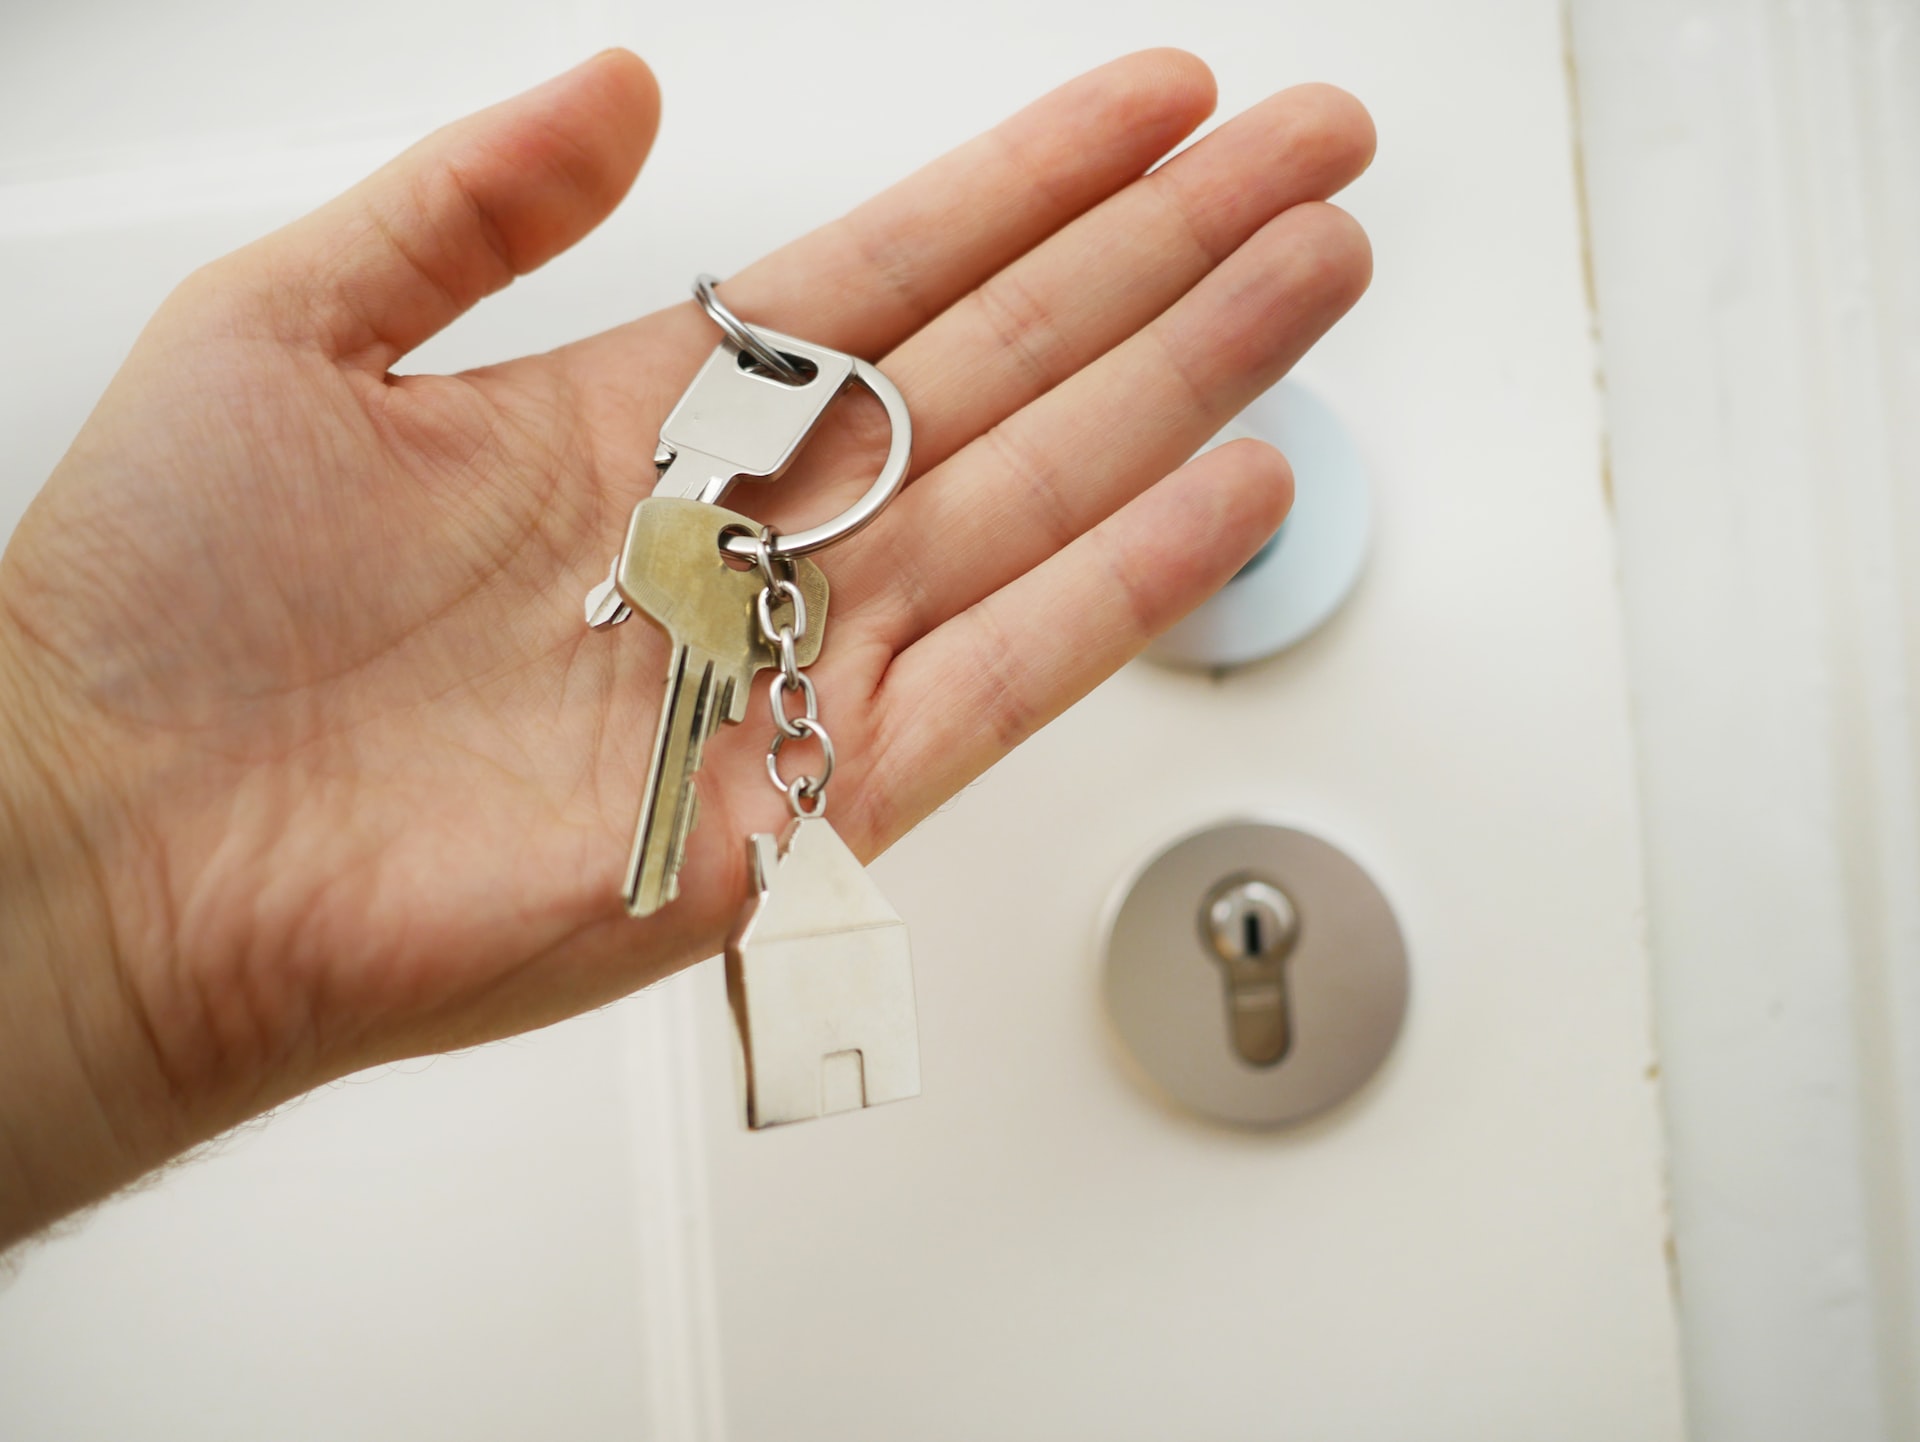 Schlüssel mit Hausschlüsselanhänger in einer Hand